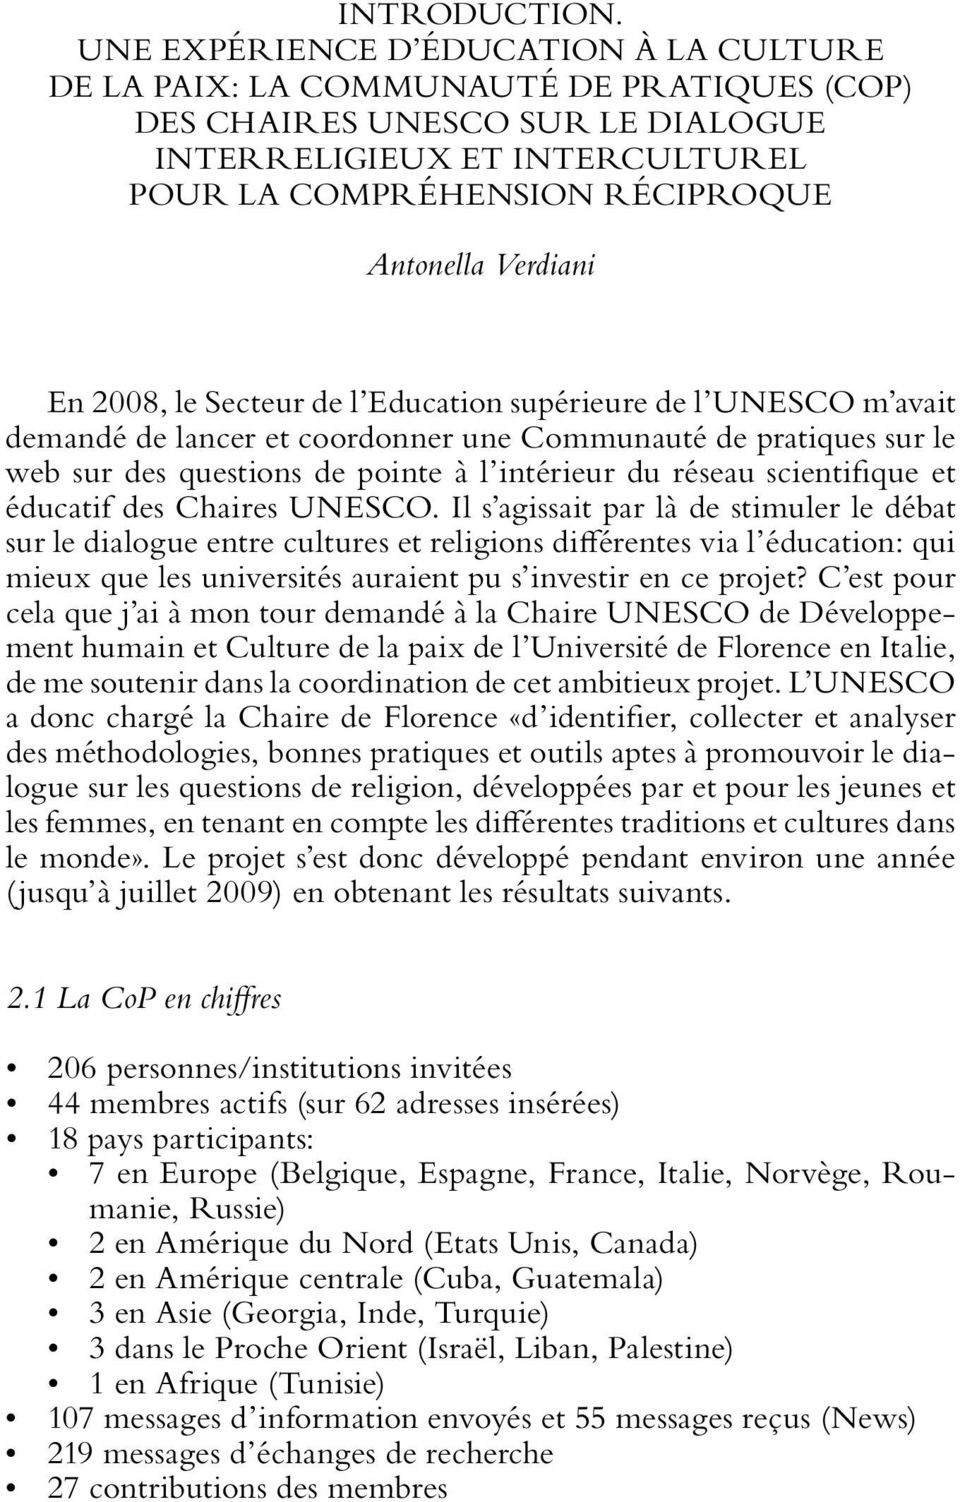 Verdiani En 2008, le Secteur de l Education supérieure de l UNESCO m avait demandé de lancer et coordonner une Communauté de pratiques sur le web sur des questions de pointe à l intérieur du réseau